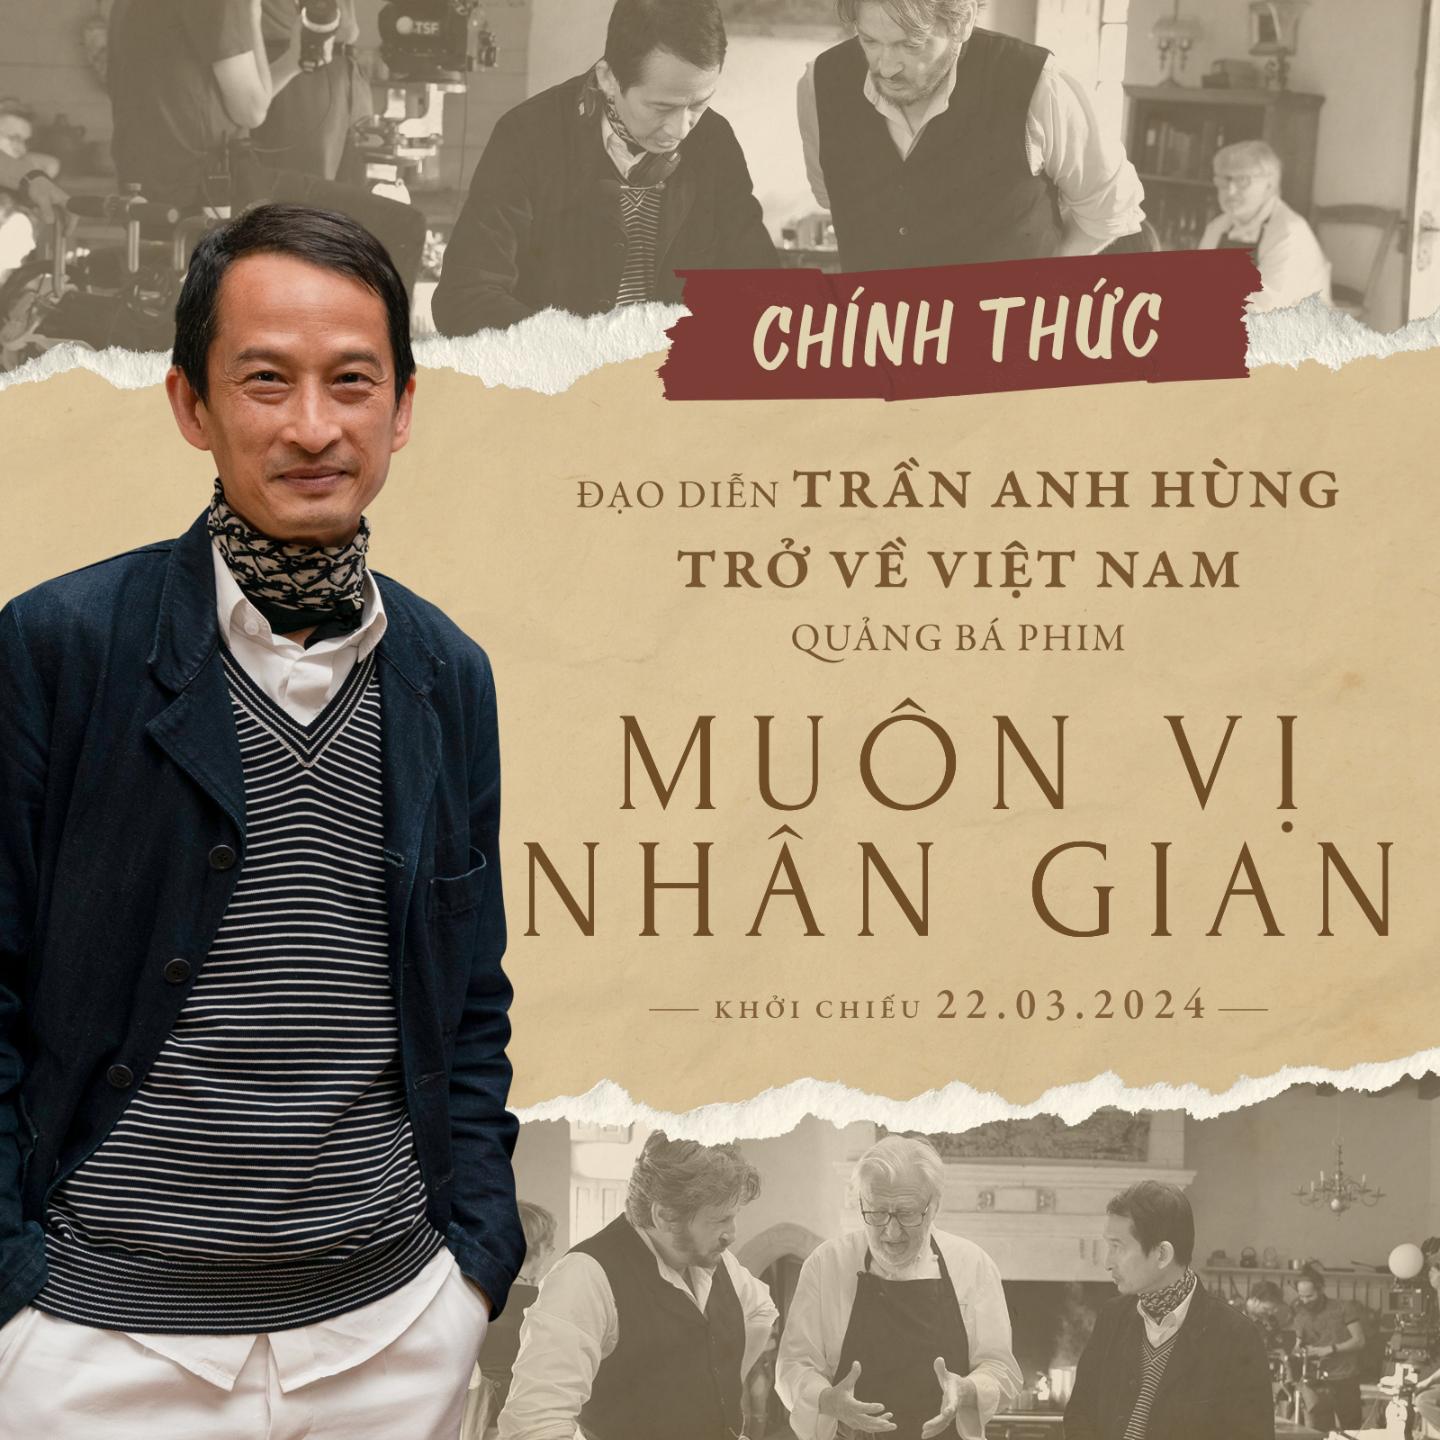 Tran Anh Hung artwork 2 Đạo diễn Trần Anh Hùng trở về Việt Nam quảng bá phim điện ảnh Muôn Vị Nhân Gian